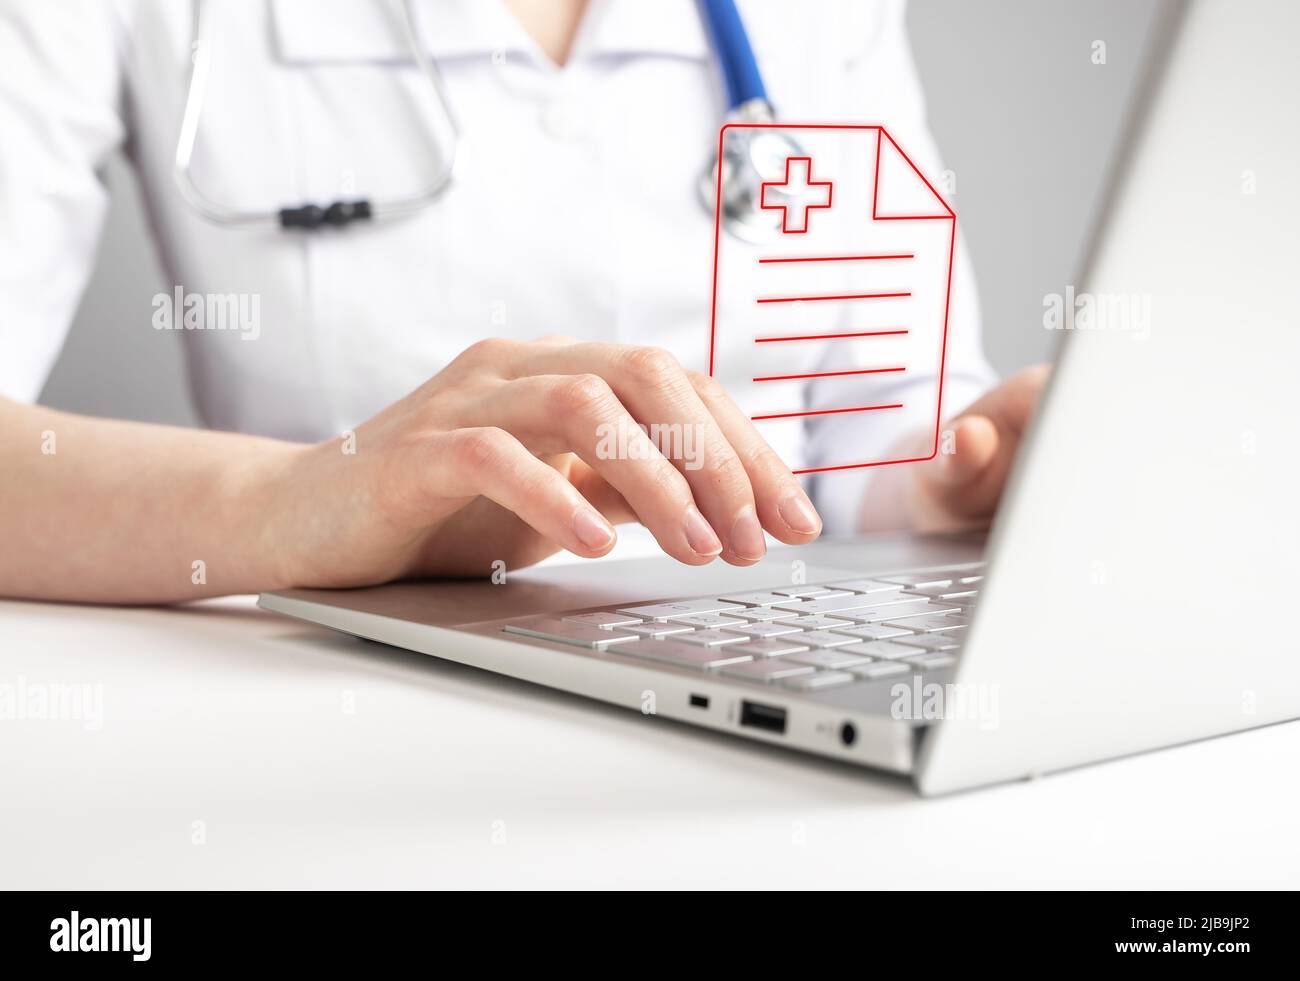 Arzt, der online mit medizinischen Dokumenten auf einem Laptop arbeitet und Testergebnisse oder Verschreibungen an den Patienten meldet. Aufzeichnungen in Klinik oder Telemedizin, telemedizinisches Konzept. Hochwertige Fotos Stockfoto